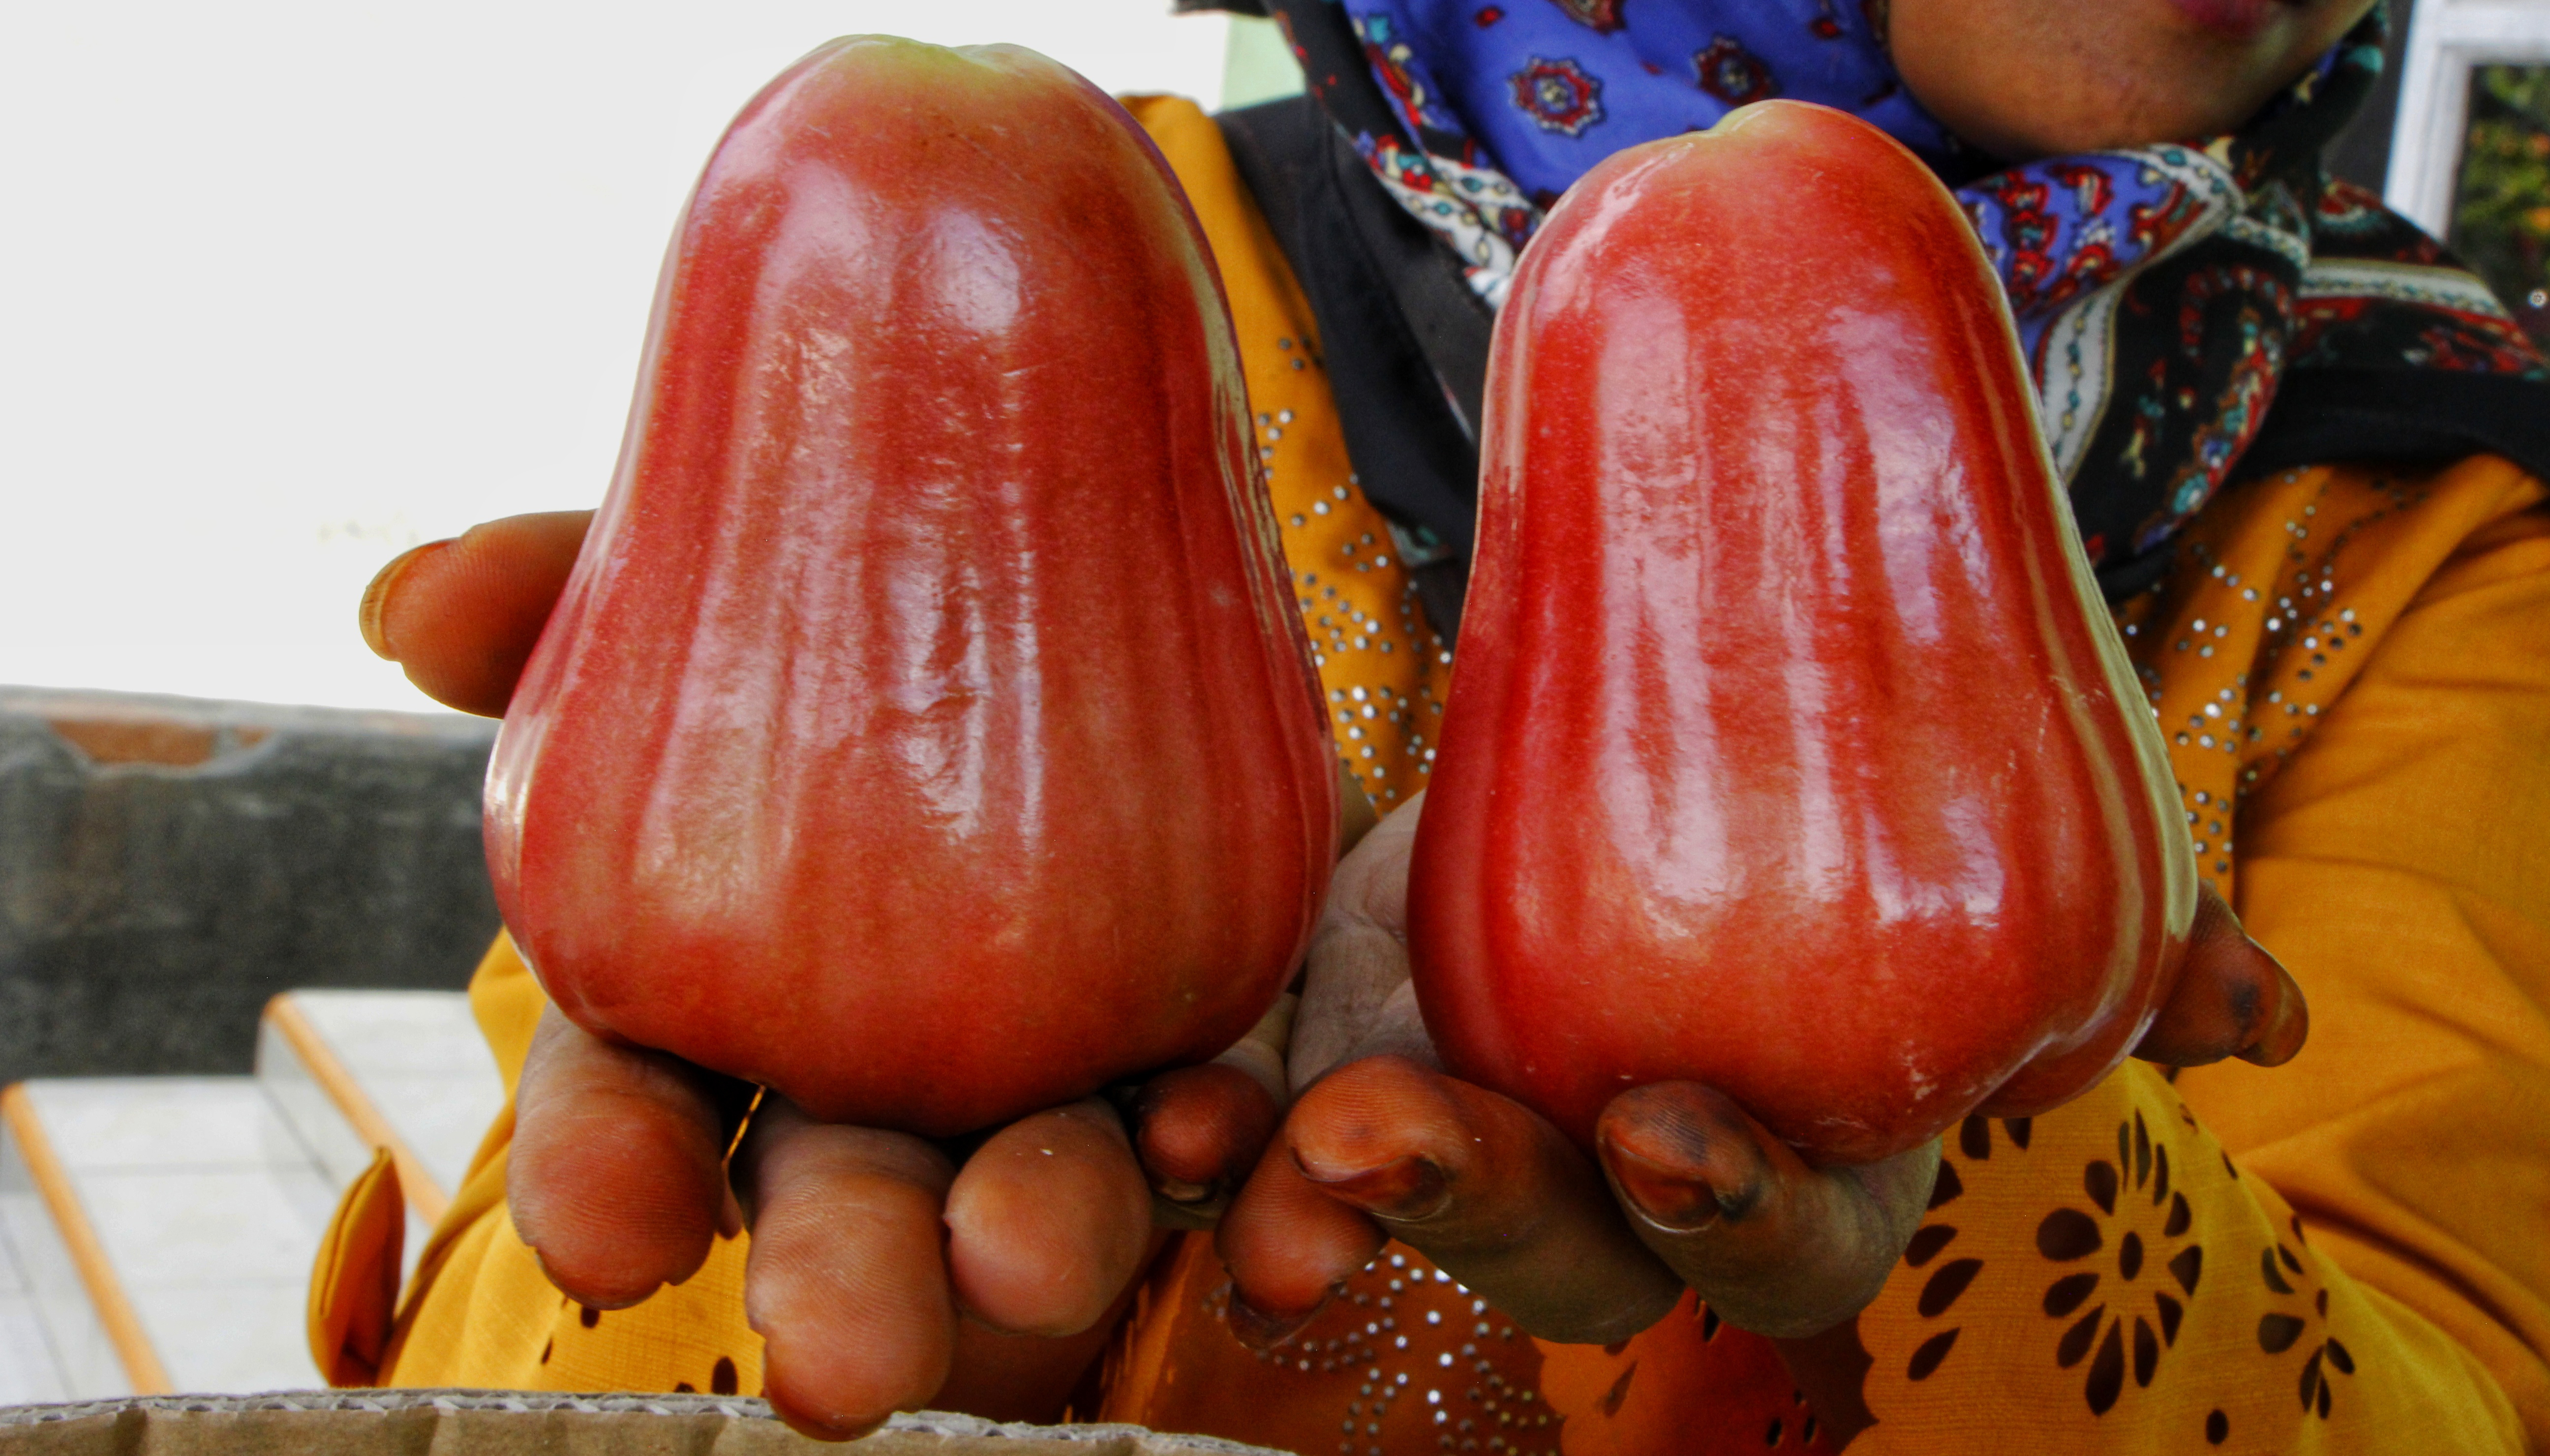 Jambu madu Deli super warna merah ini bisa dijual Rp24 ribu per kg di tingkat distributor lokal dan Rp45 ribu-Rp50 ribu per kg di pasaran | Foto: Ayat S Karokaro/ Mongabay Indonesia